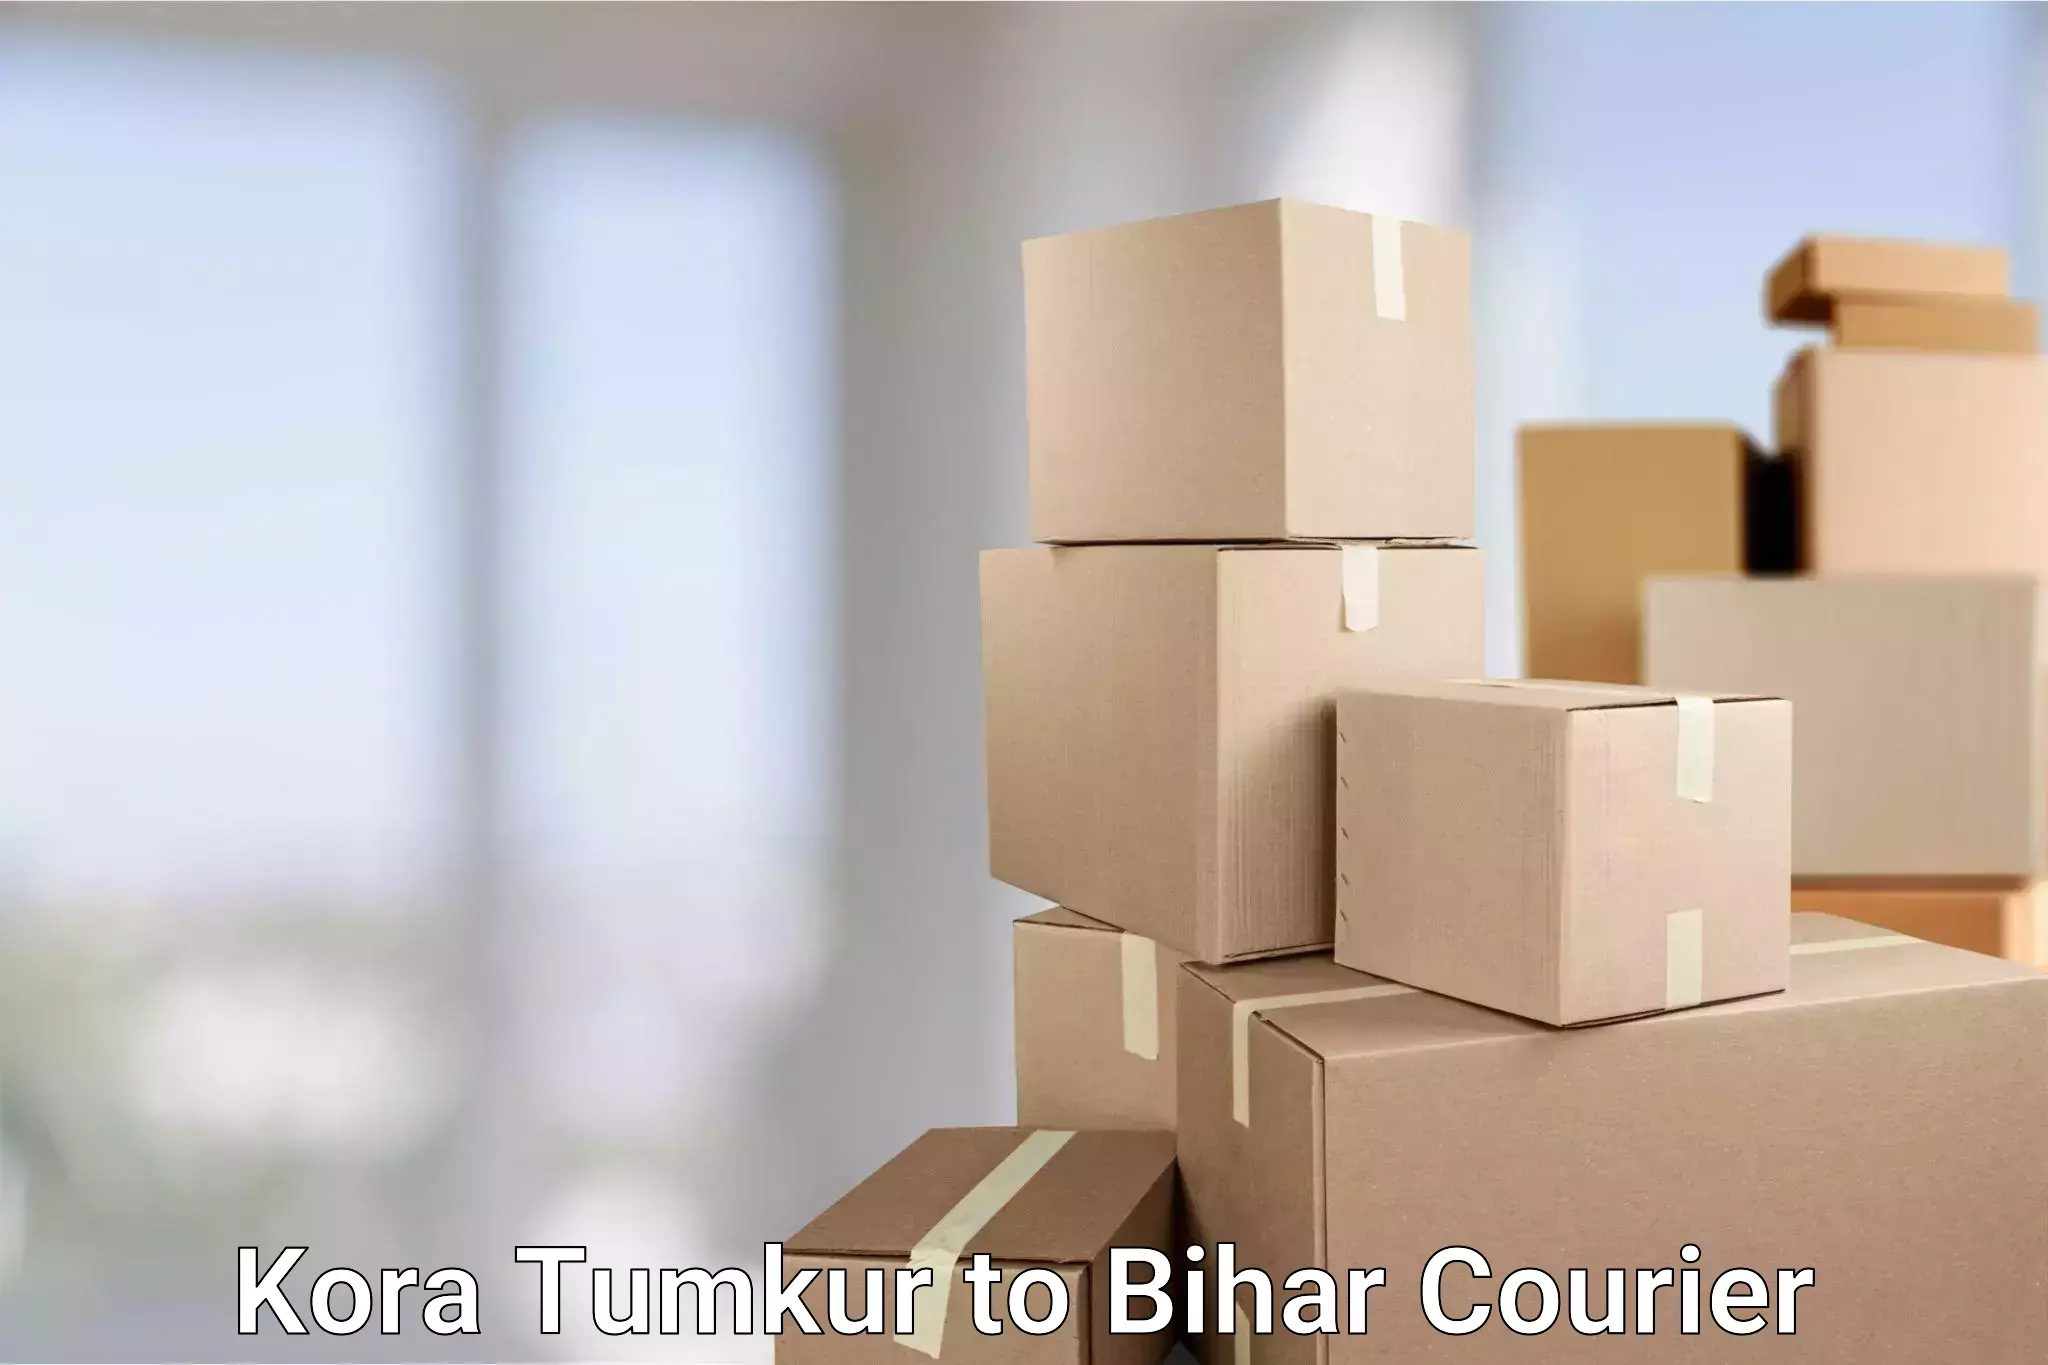 Optimized delivery routes Kora Tumkur to Gopalganj